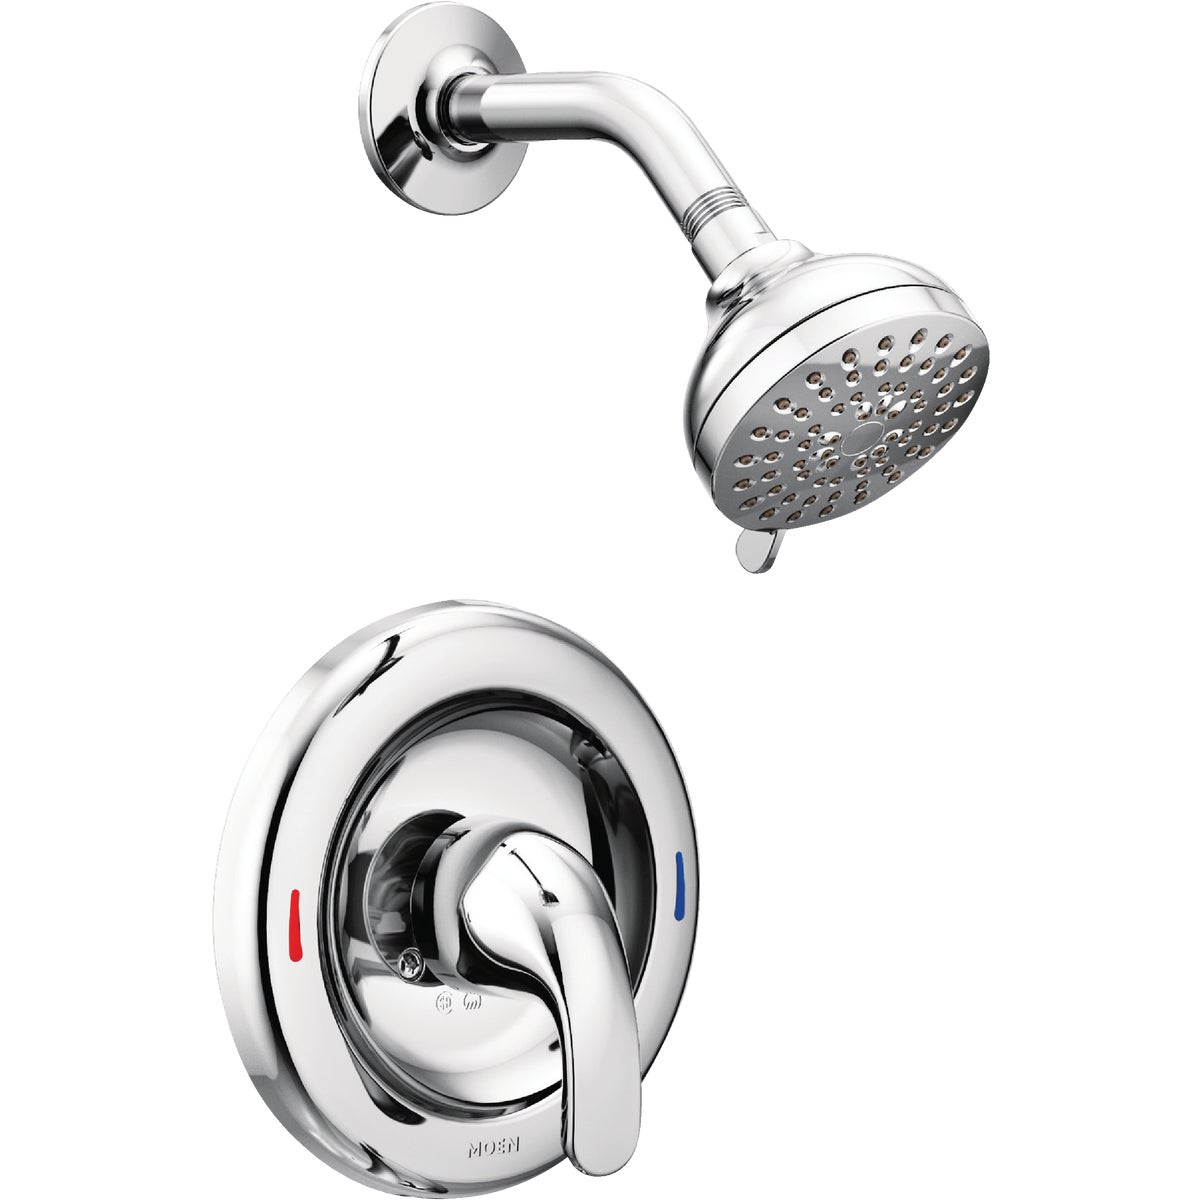 Moen Adler Chrome 1-Handle Lever Shower Faucet